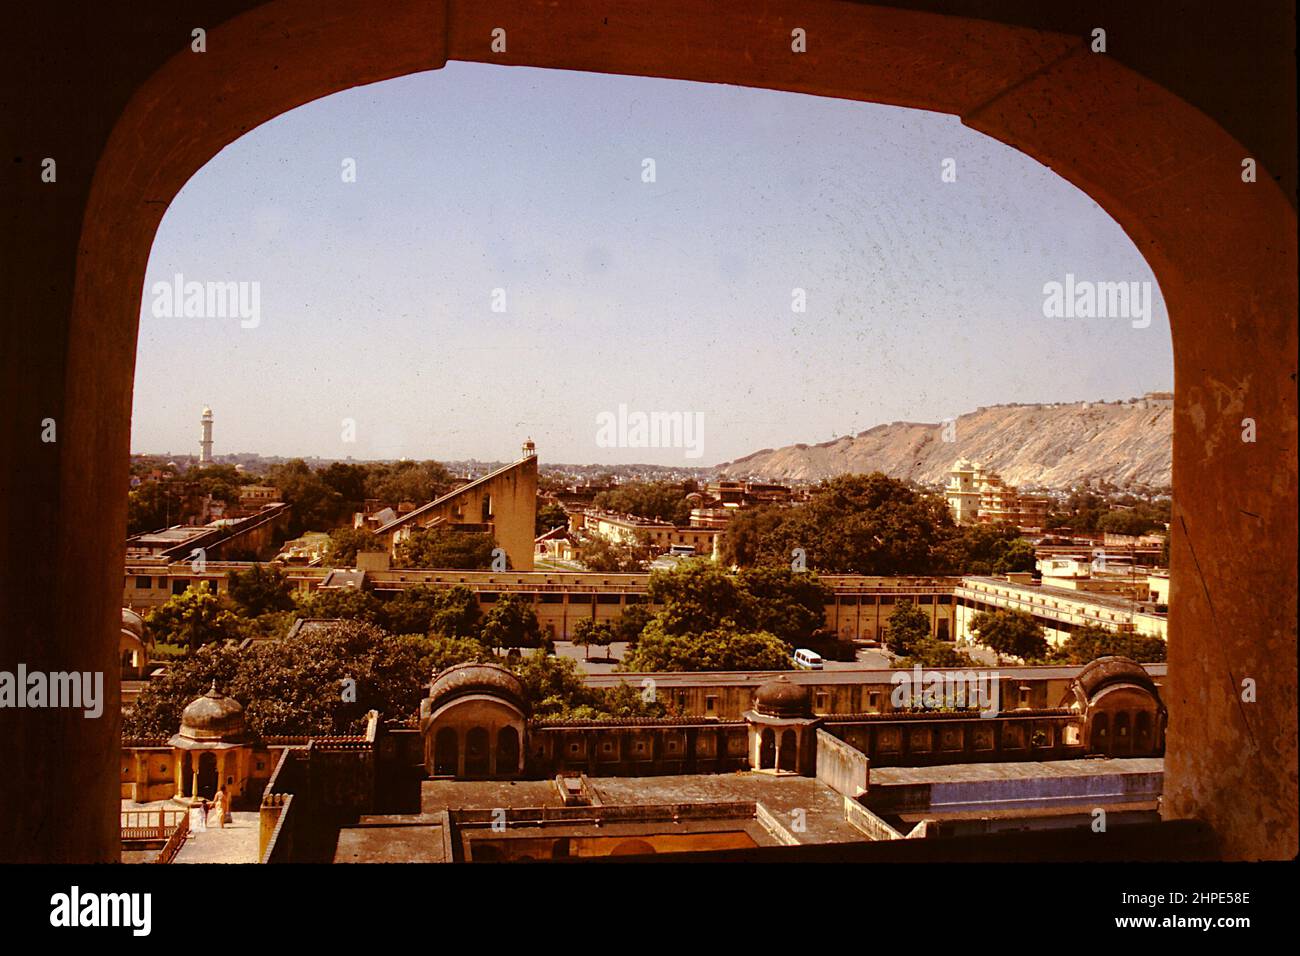 View of City Palace and Jantar Mantar from from arch of Hawa Mahal at Jaipur in Rajasthan, India, Asia Stock Photo